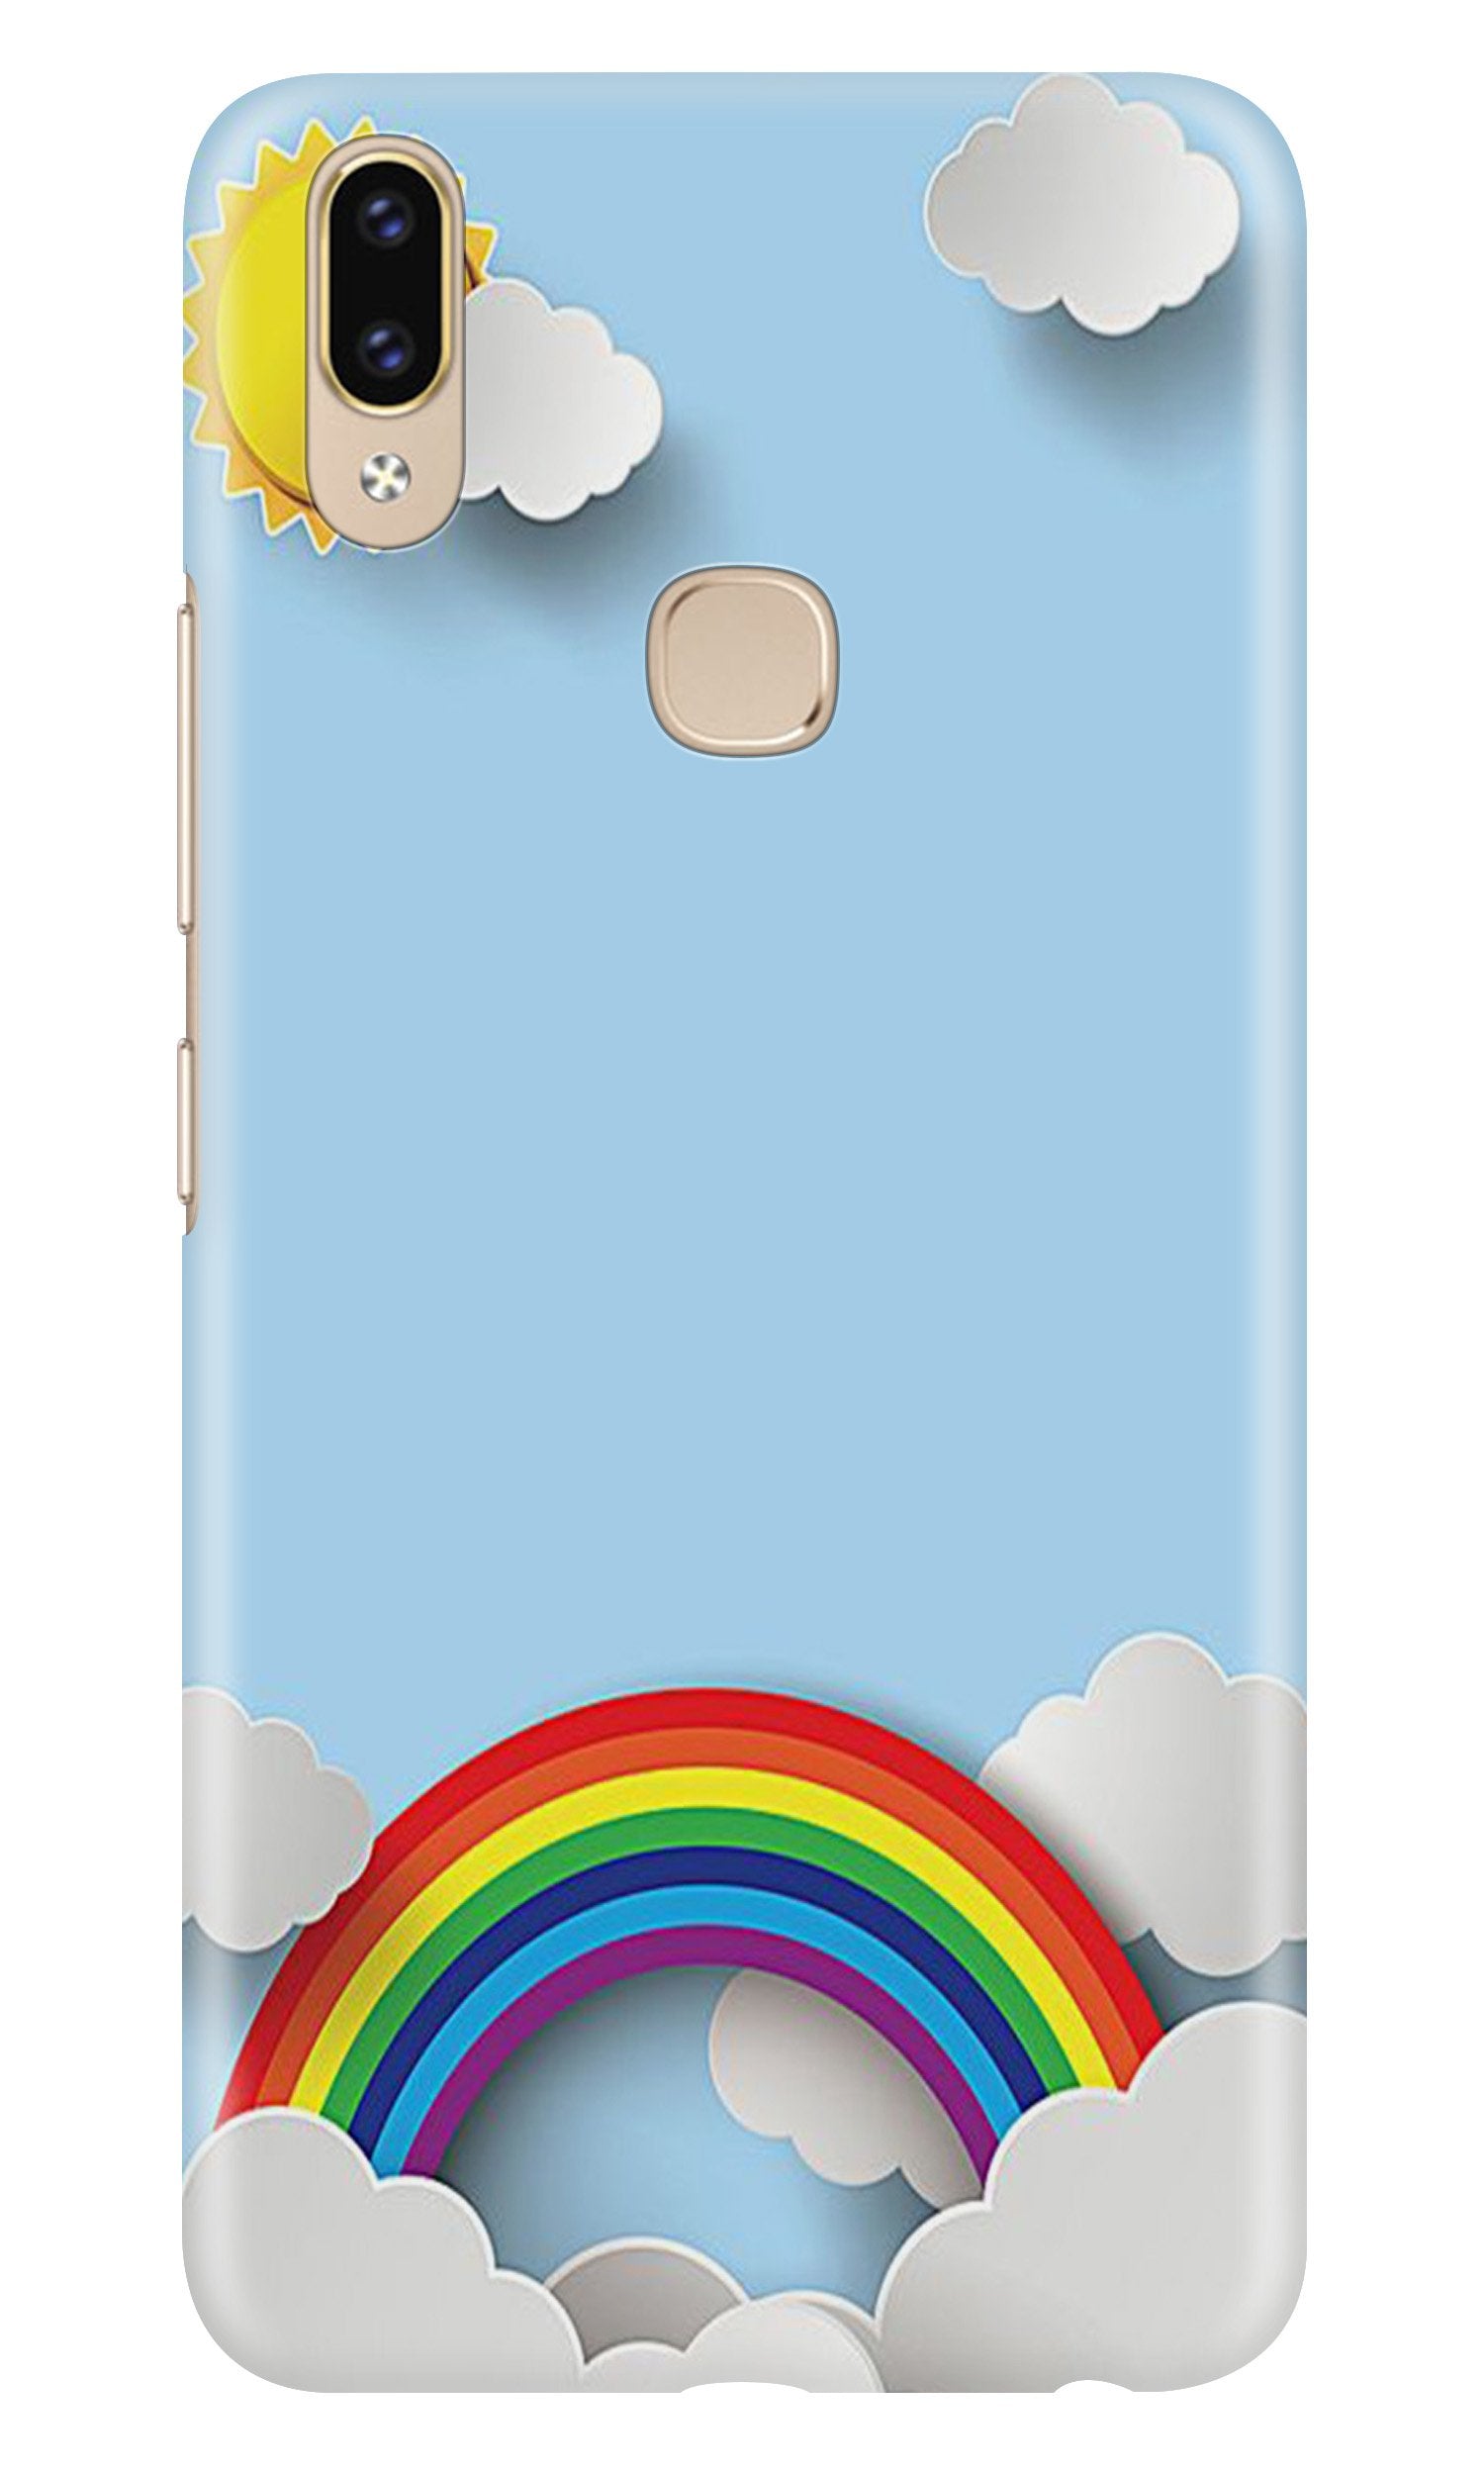 Rainbow Case for Zenfone 5z (Design No. 225)